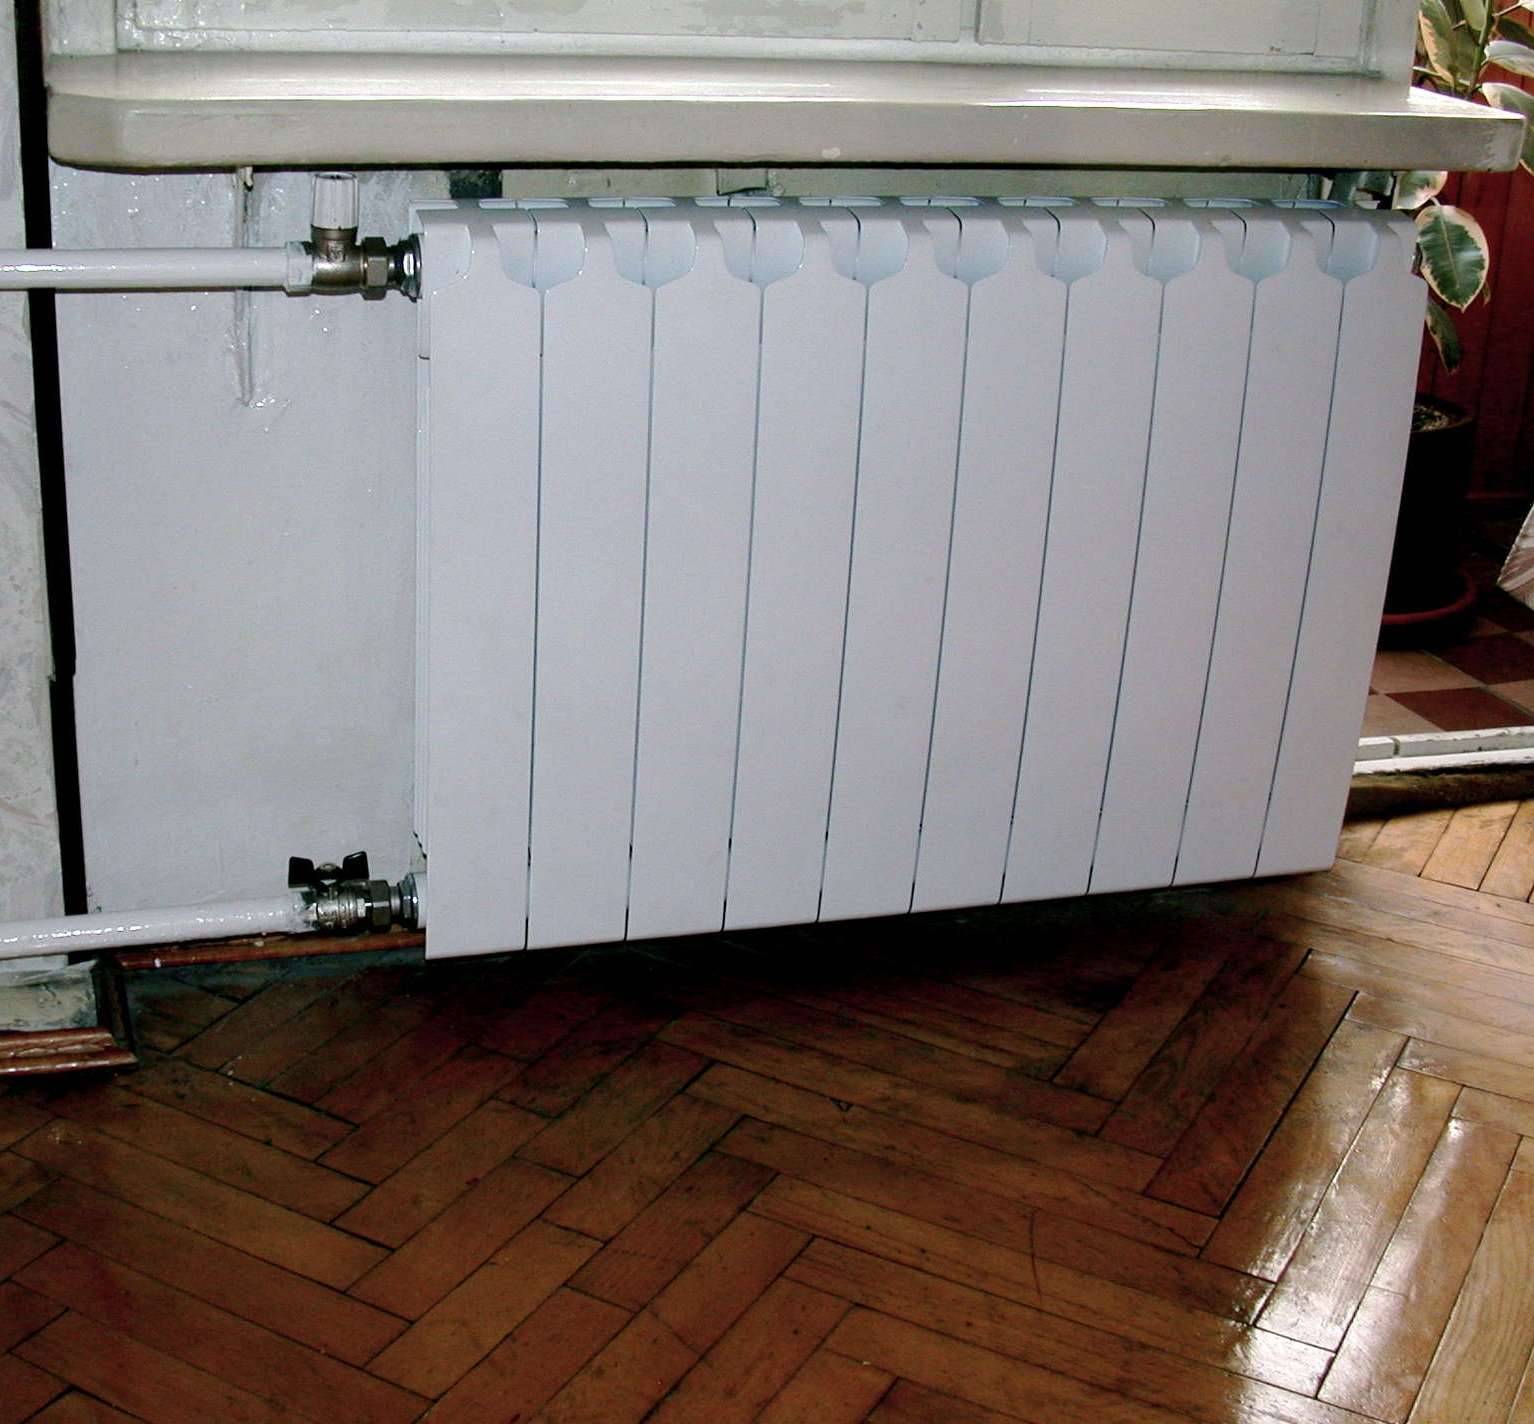 Cхемы подключения радиаторов отопления в частном доме: как подключить батарею правильно, варианты